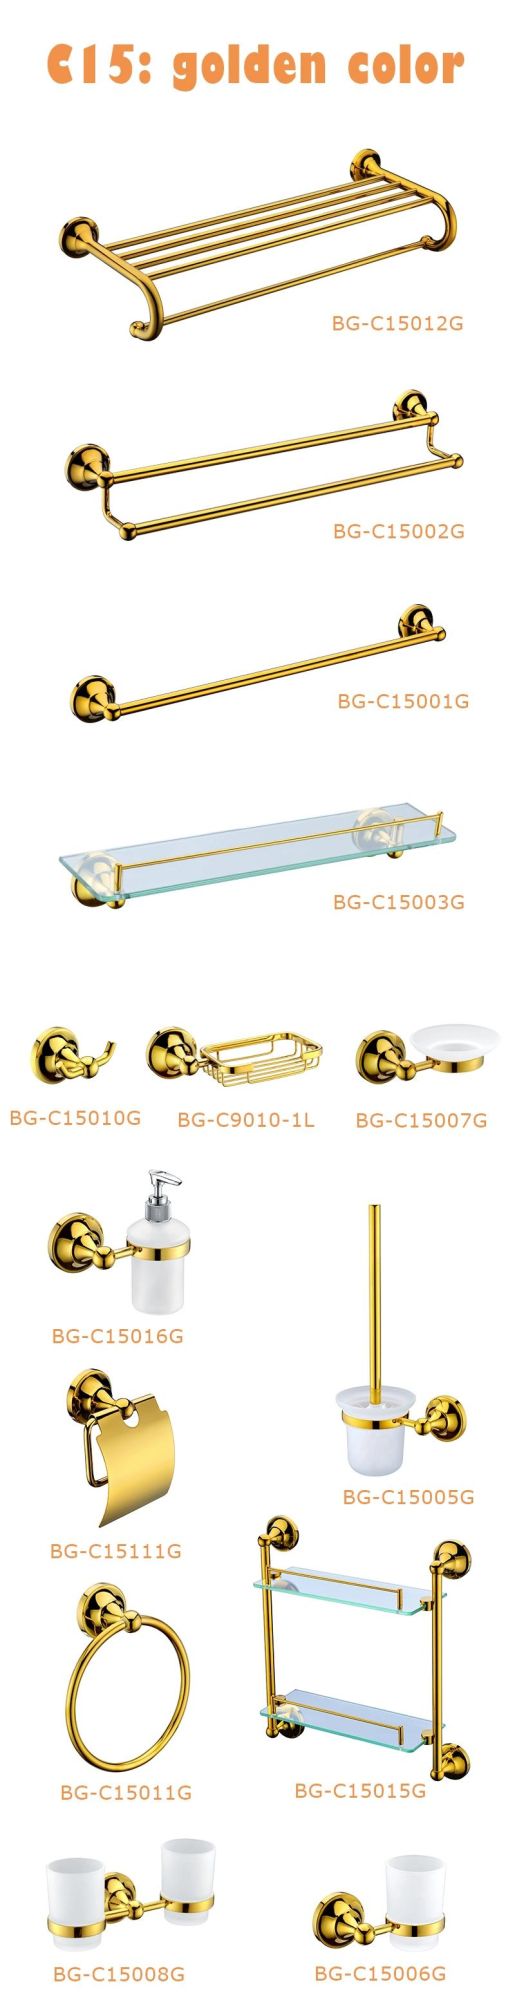 Shinning Golden Color Liquid Dispenser Bathroom Fittings (BG-C15016G)